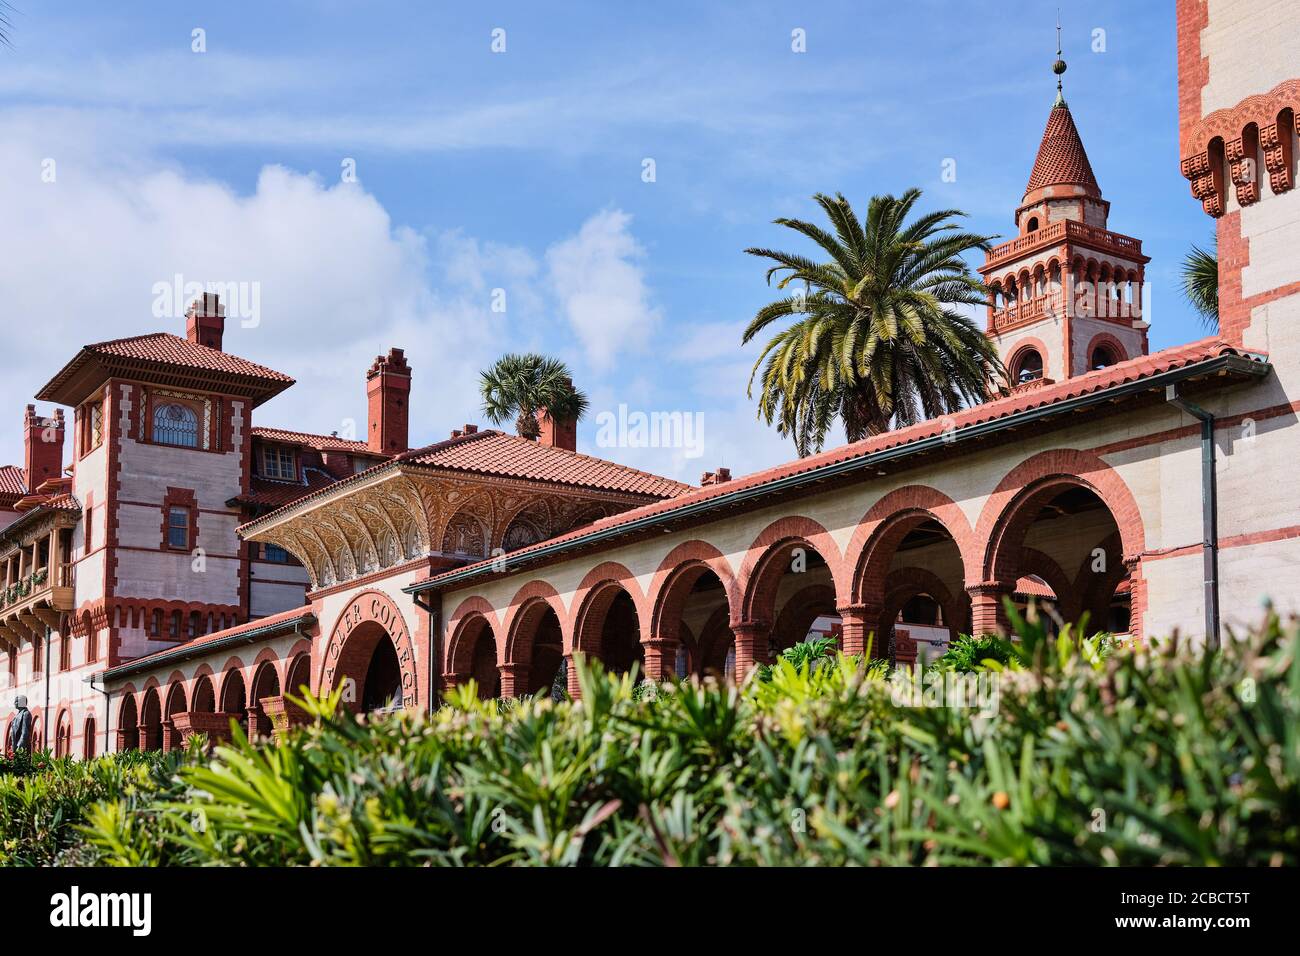 Impresionante arquitectura renacentista española en Flagler College, St. Augustine, Florida, EE.UU Foto de stock